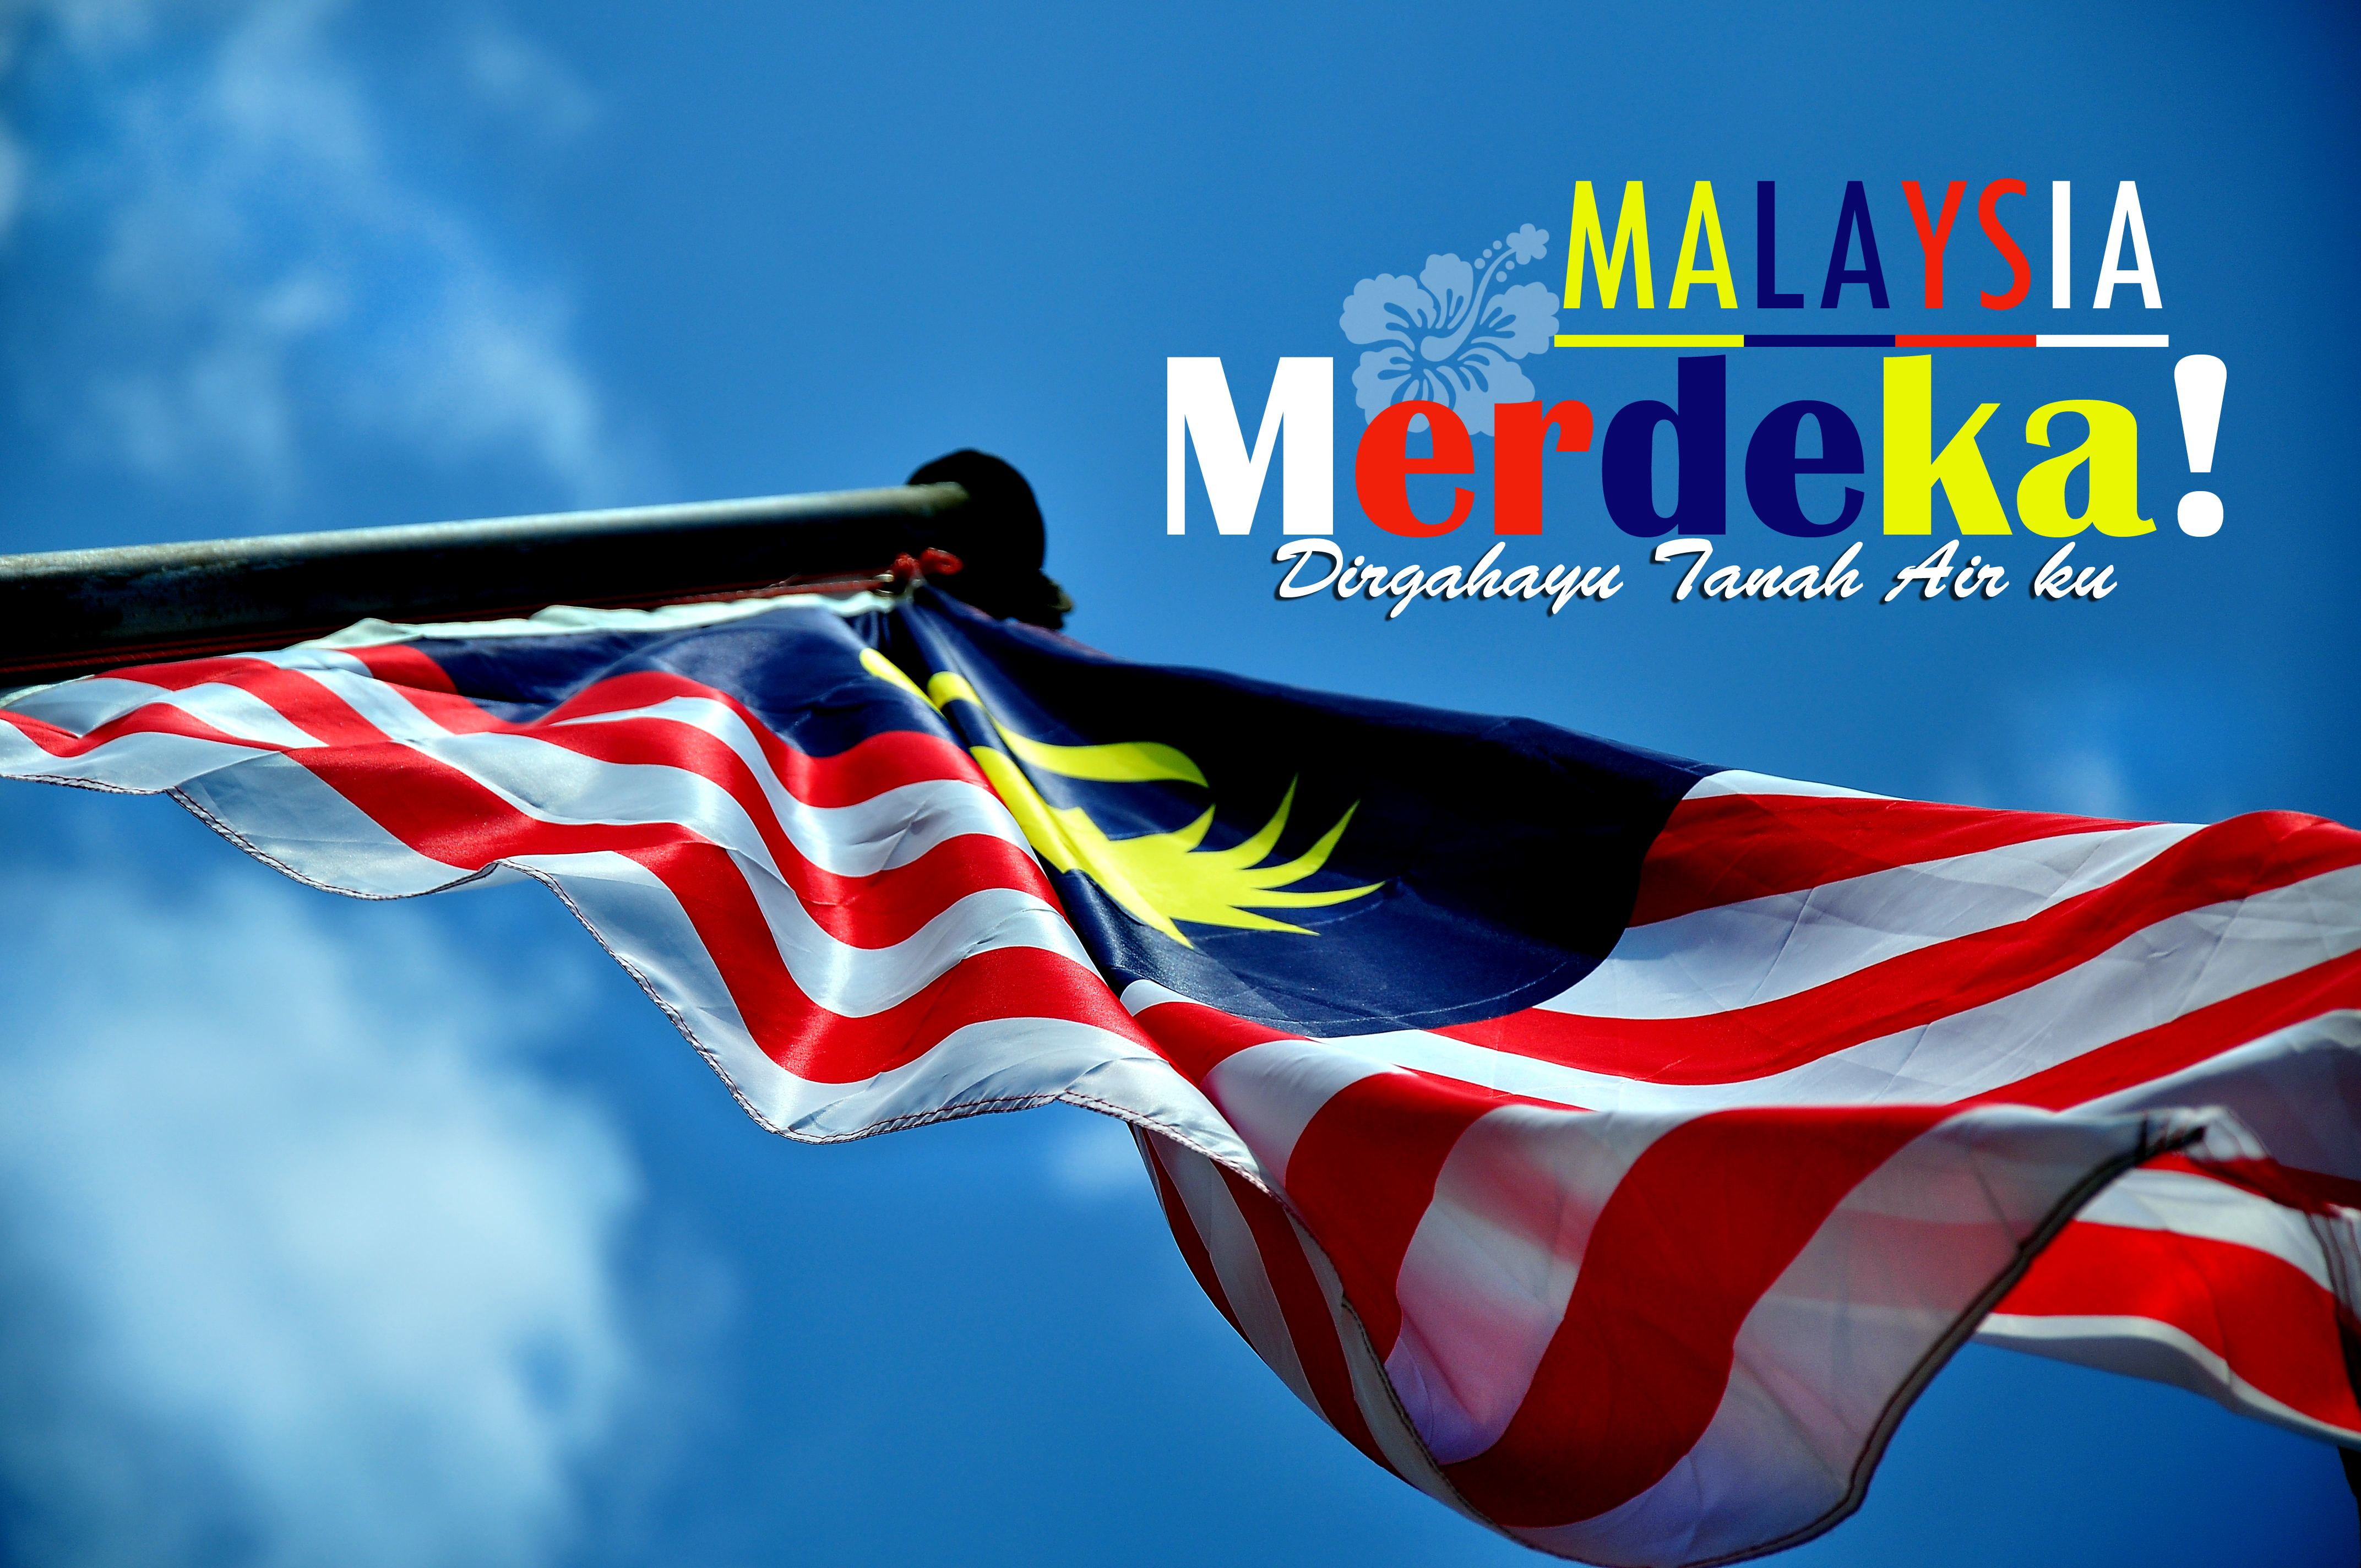 Malaysia Merdeka Day 2014